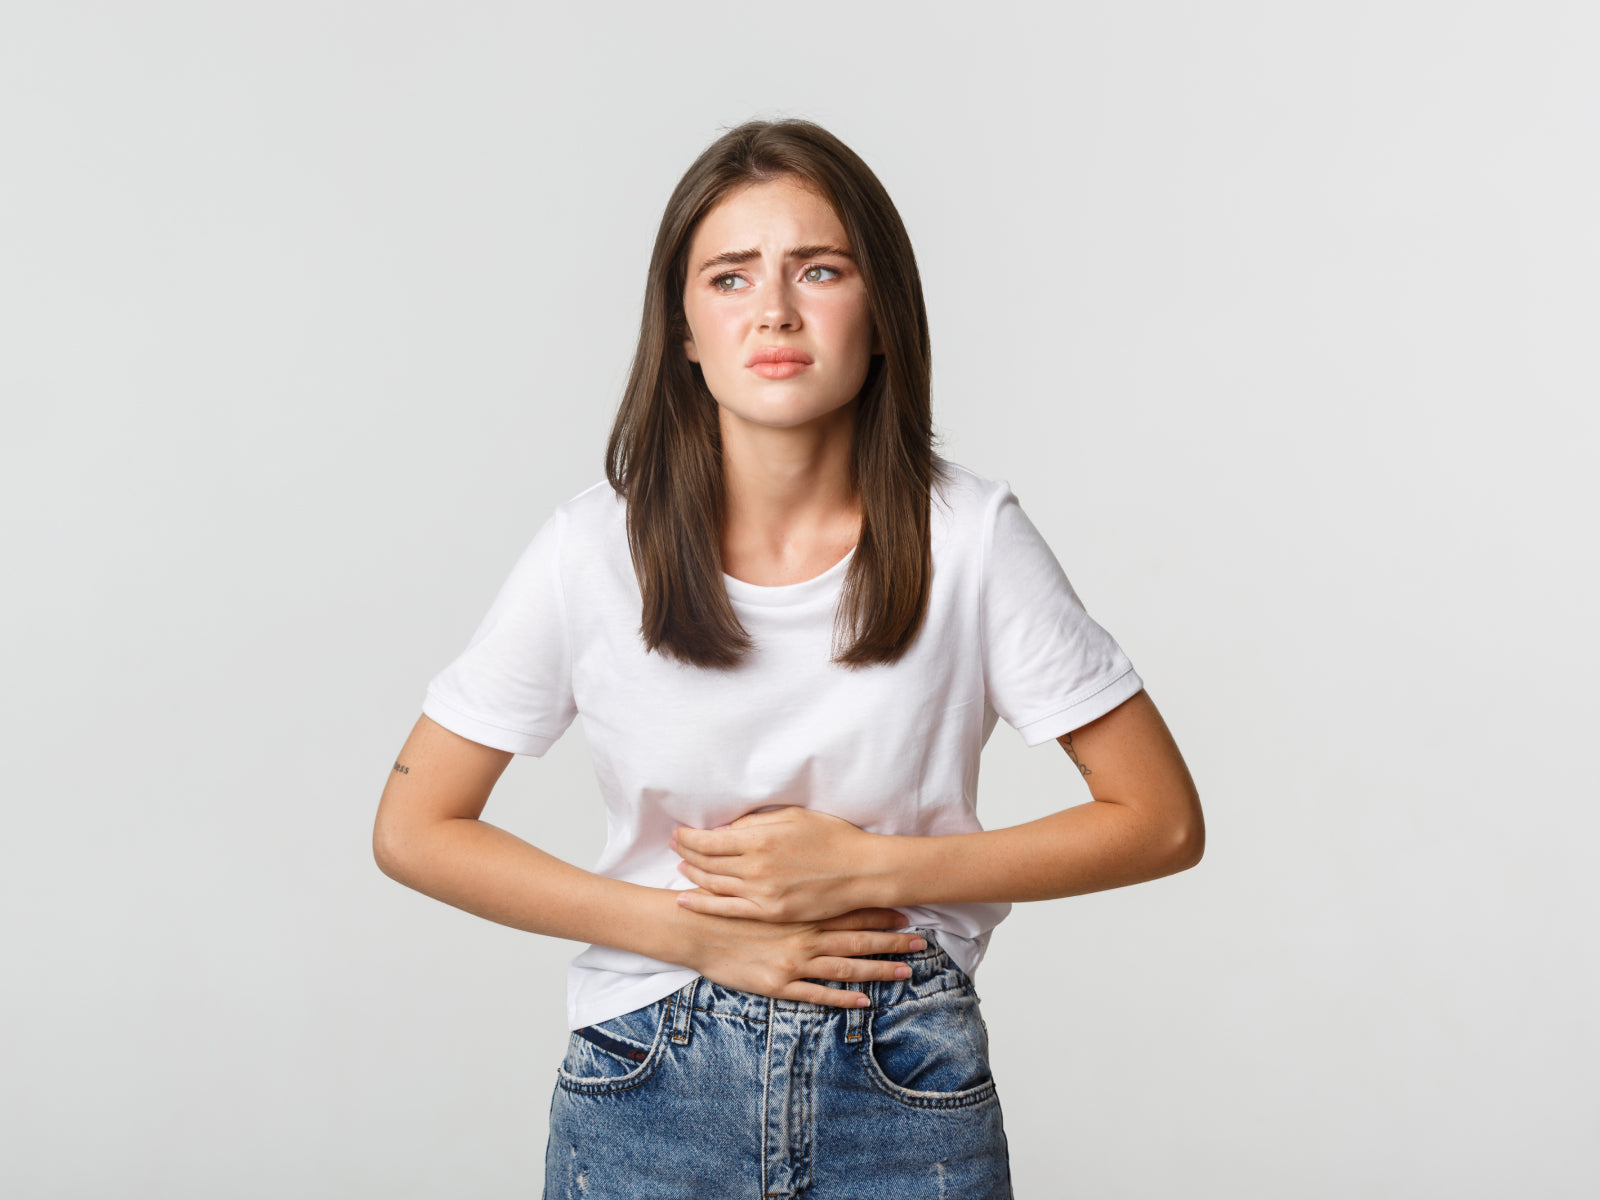 Histamine & Irritable bowel syndrome (IBS)